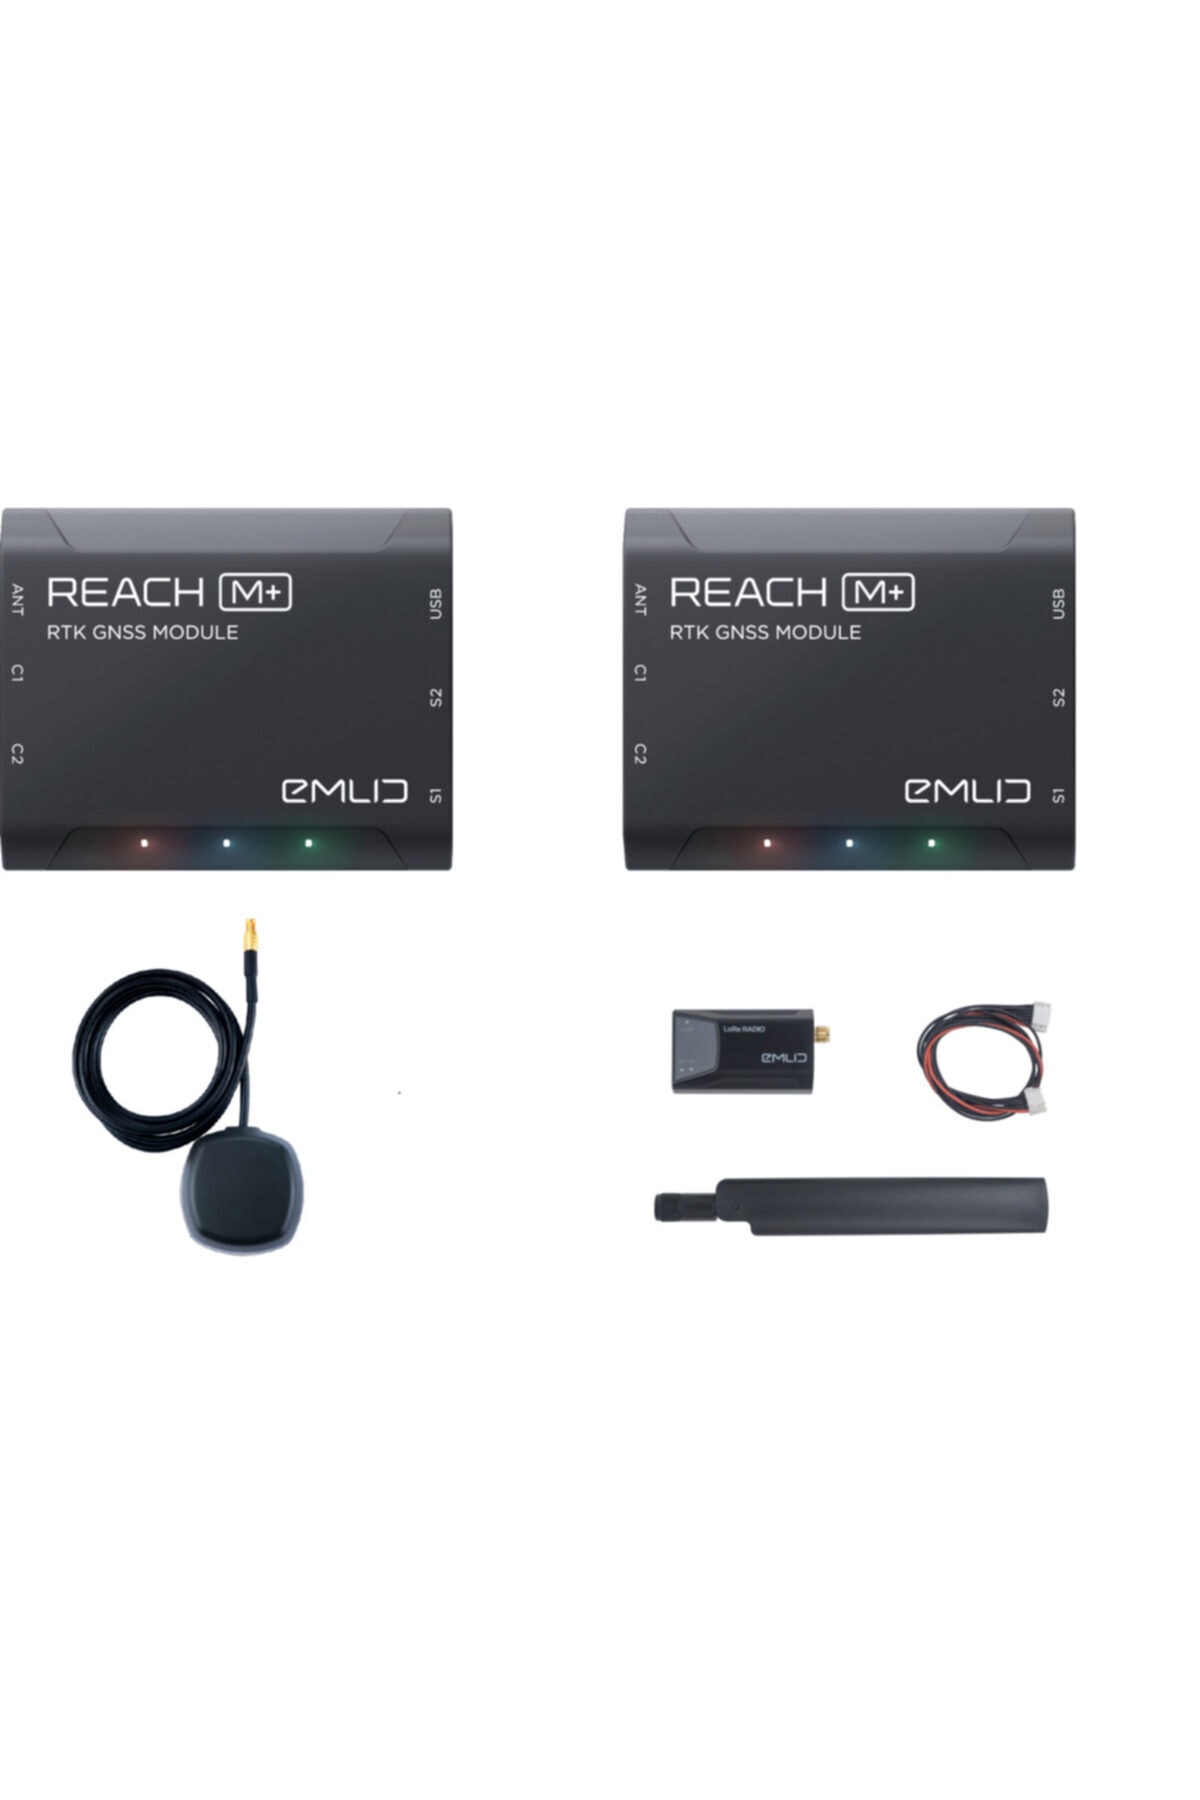 Emlid Reach M+ Lora Radio RTK Seti, Emlid drone malzemeleri, drone yedek parçaları en uygun fiyat ve taksit seçenekleri ile dronmarket.com’da